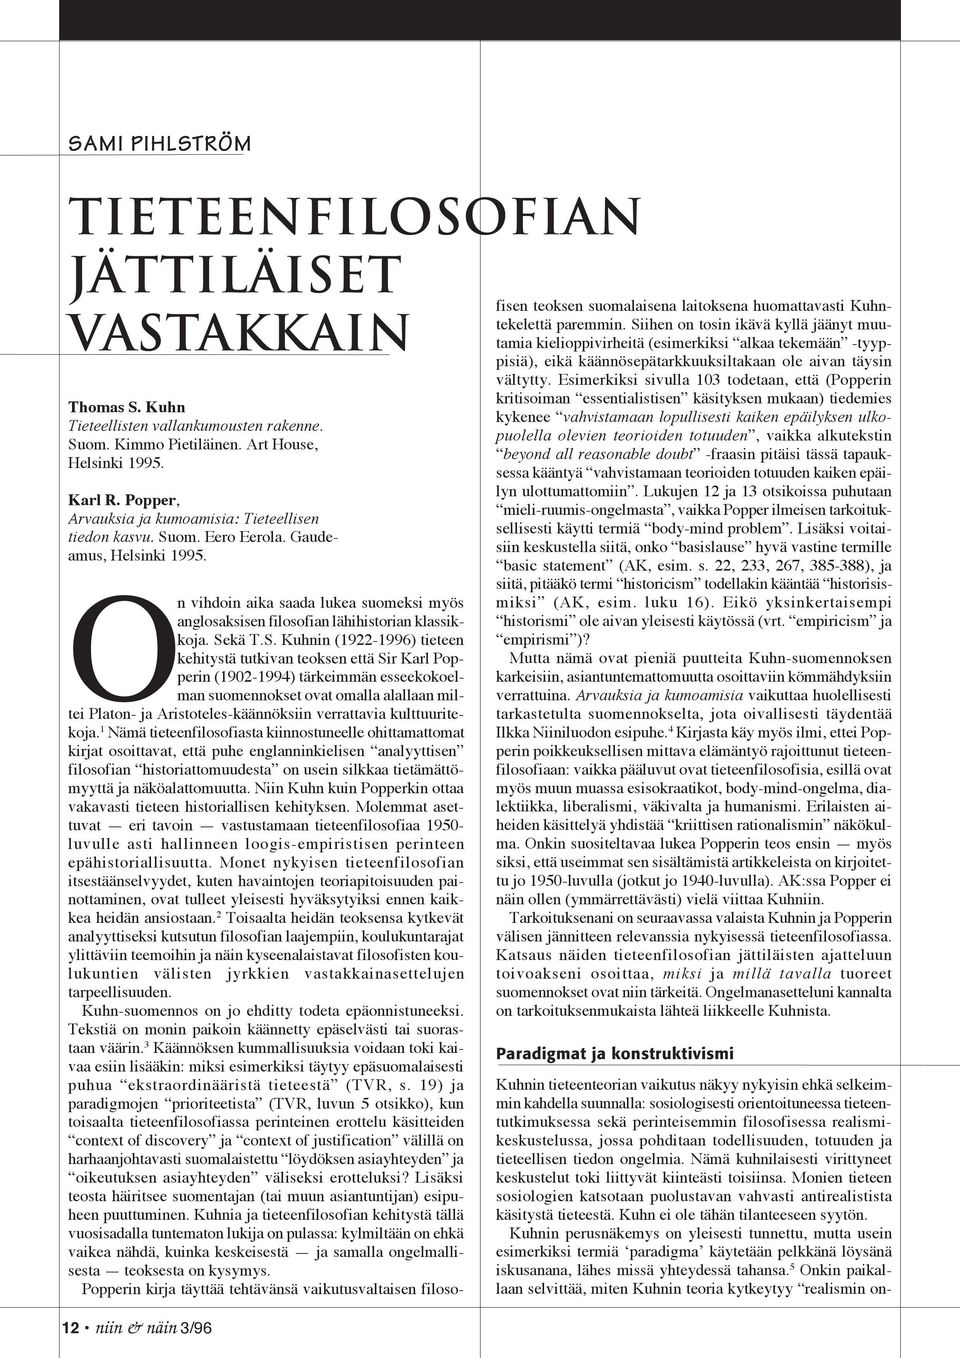 12 niin & näin 3/96 On vihdoin aika saada lukea suomeksi myös anglosaksisen filosofian lähihistorian klassikkoja. Se